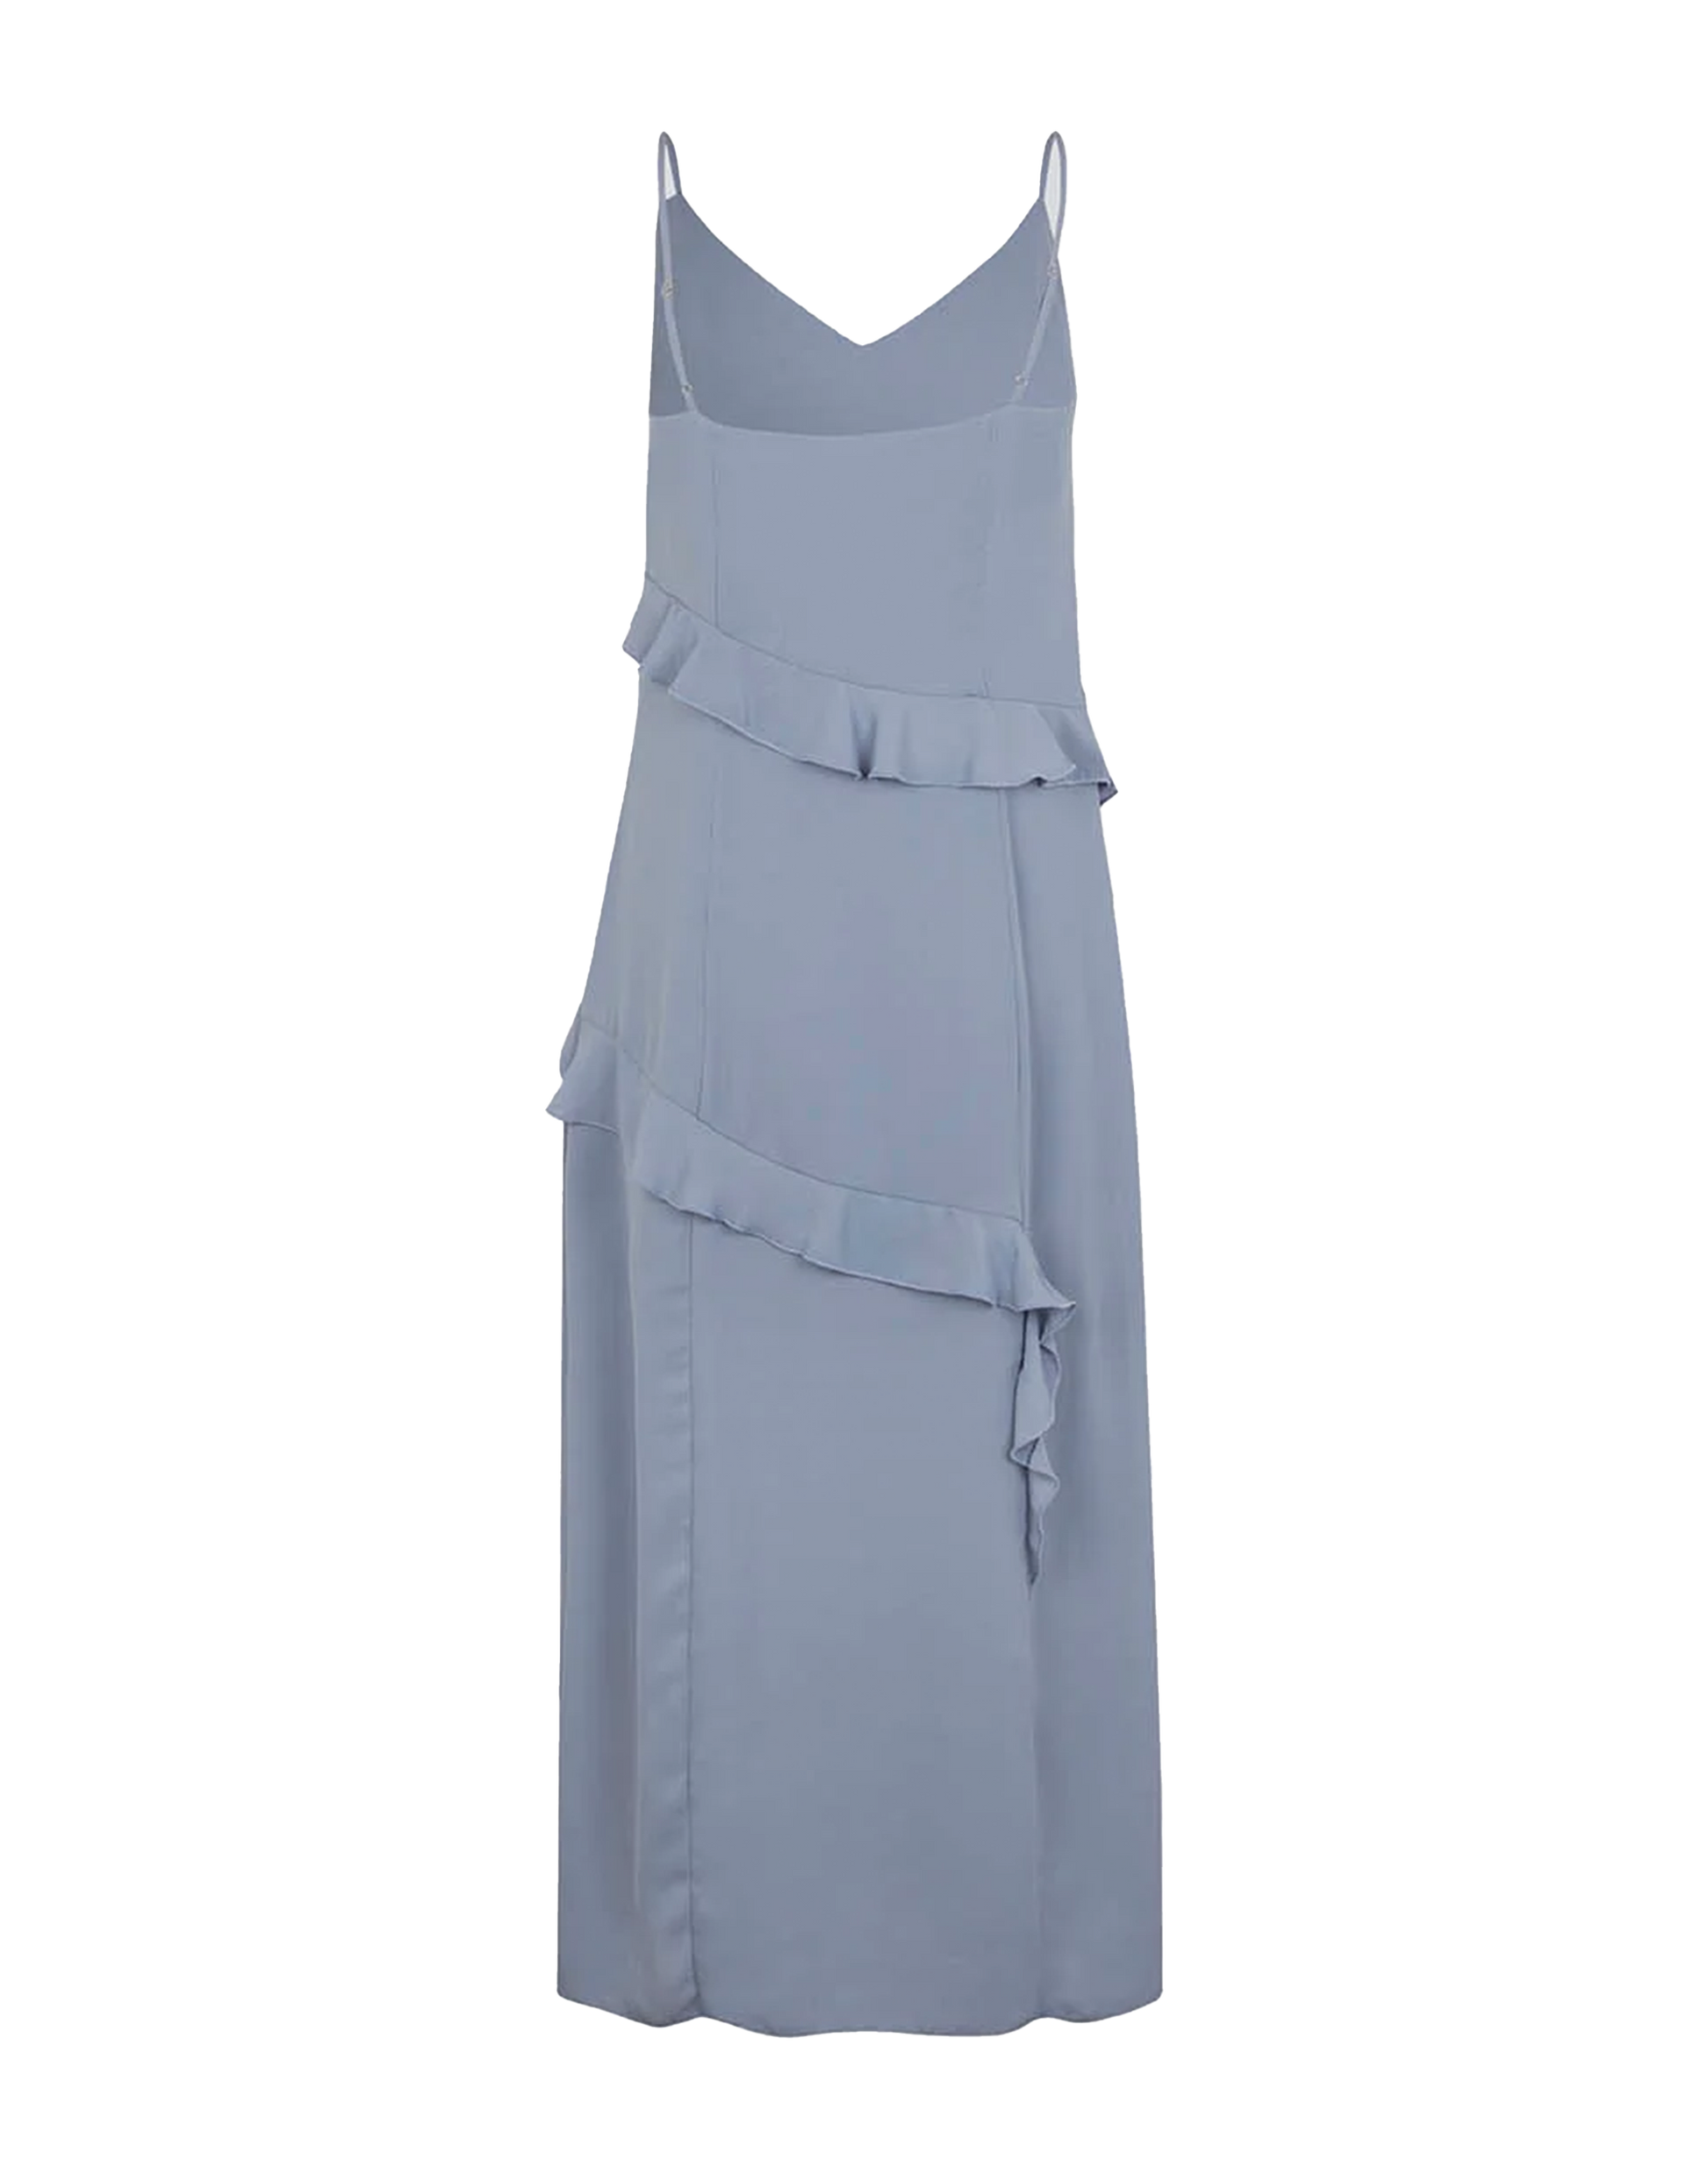 MODSTRÖM Halima Kleid in Silver Bullet, Ansicht Hinten